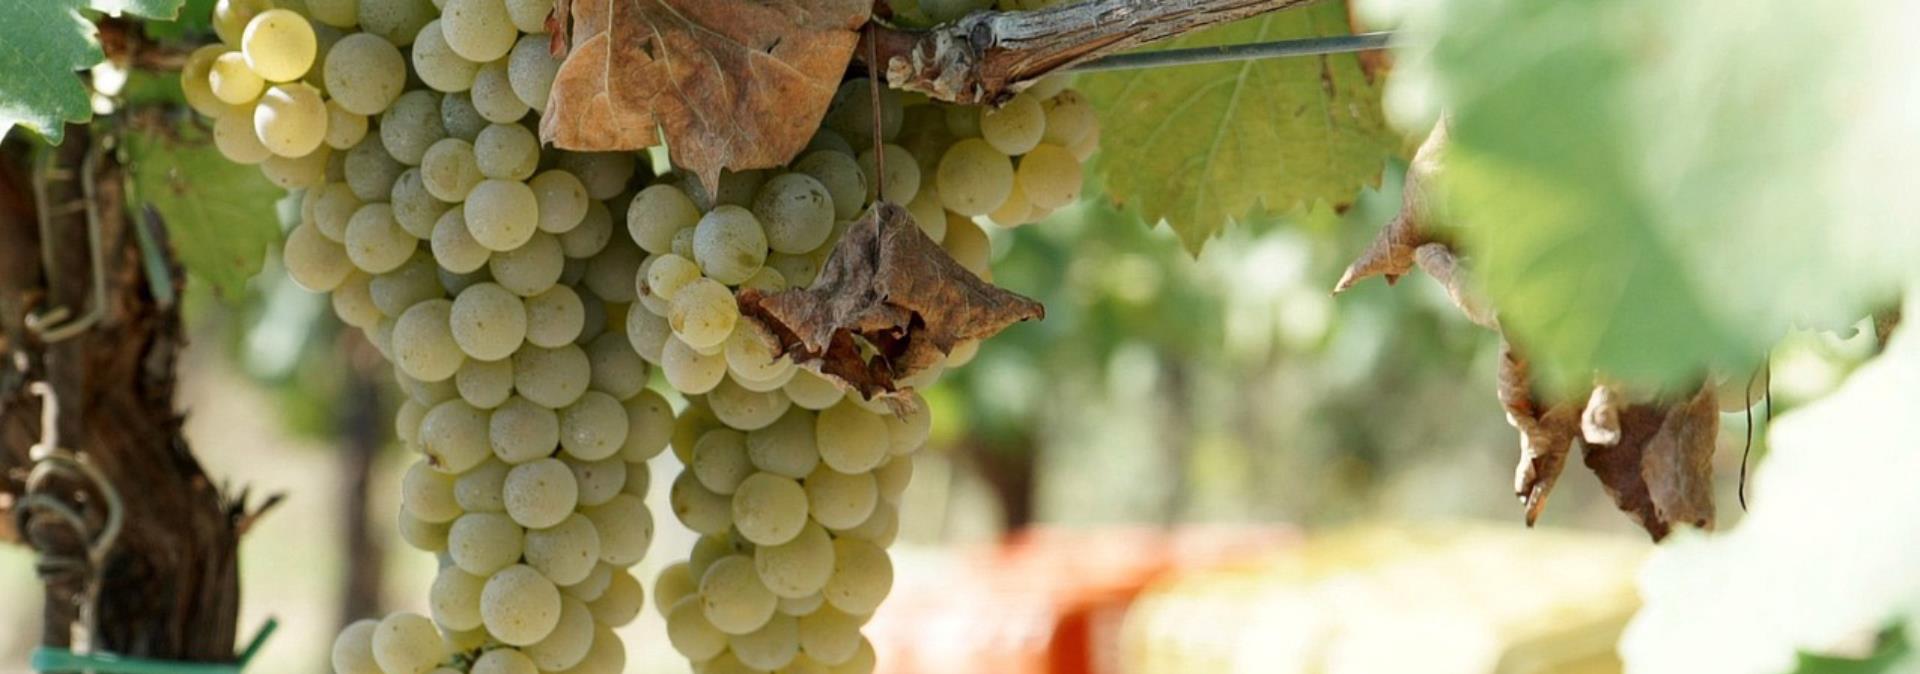 Esperienza enologica in Toscana: Azienda Agricola Falzari riapre per degustazioni di vini biodinamici